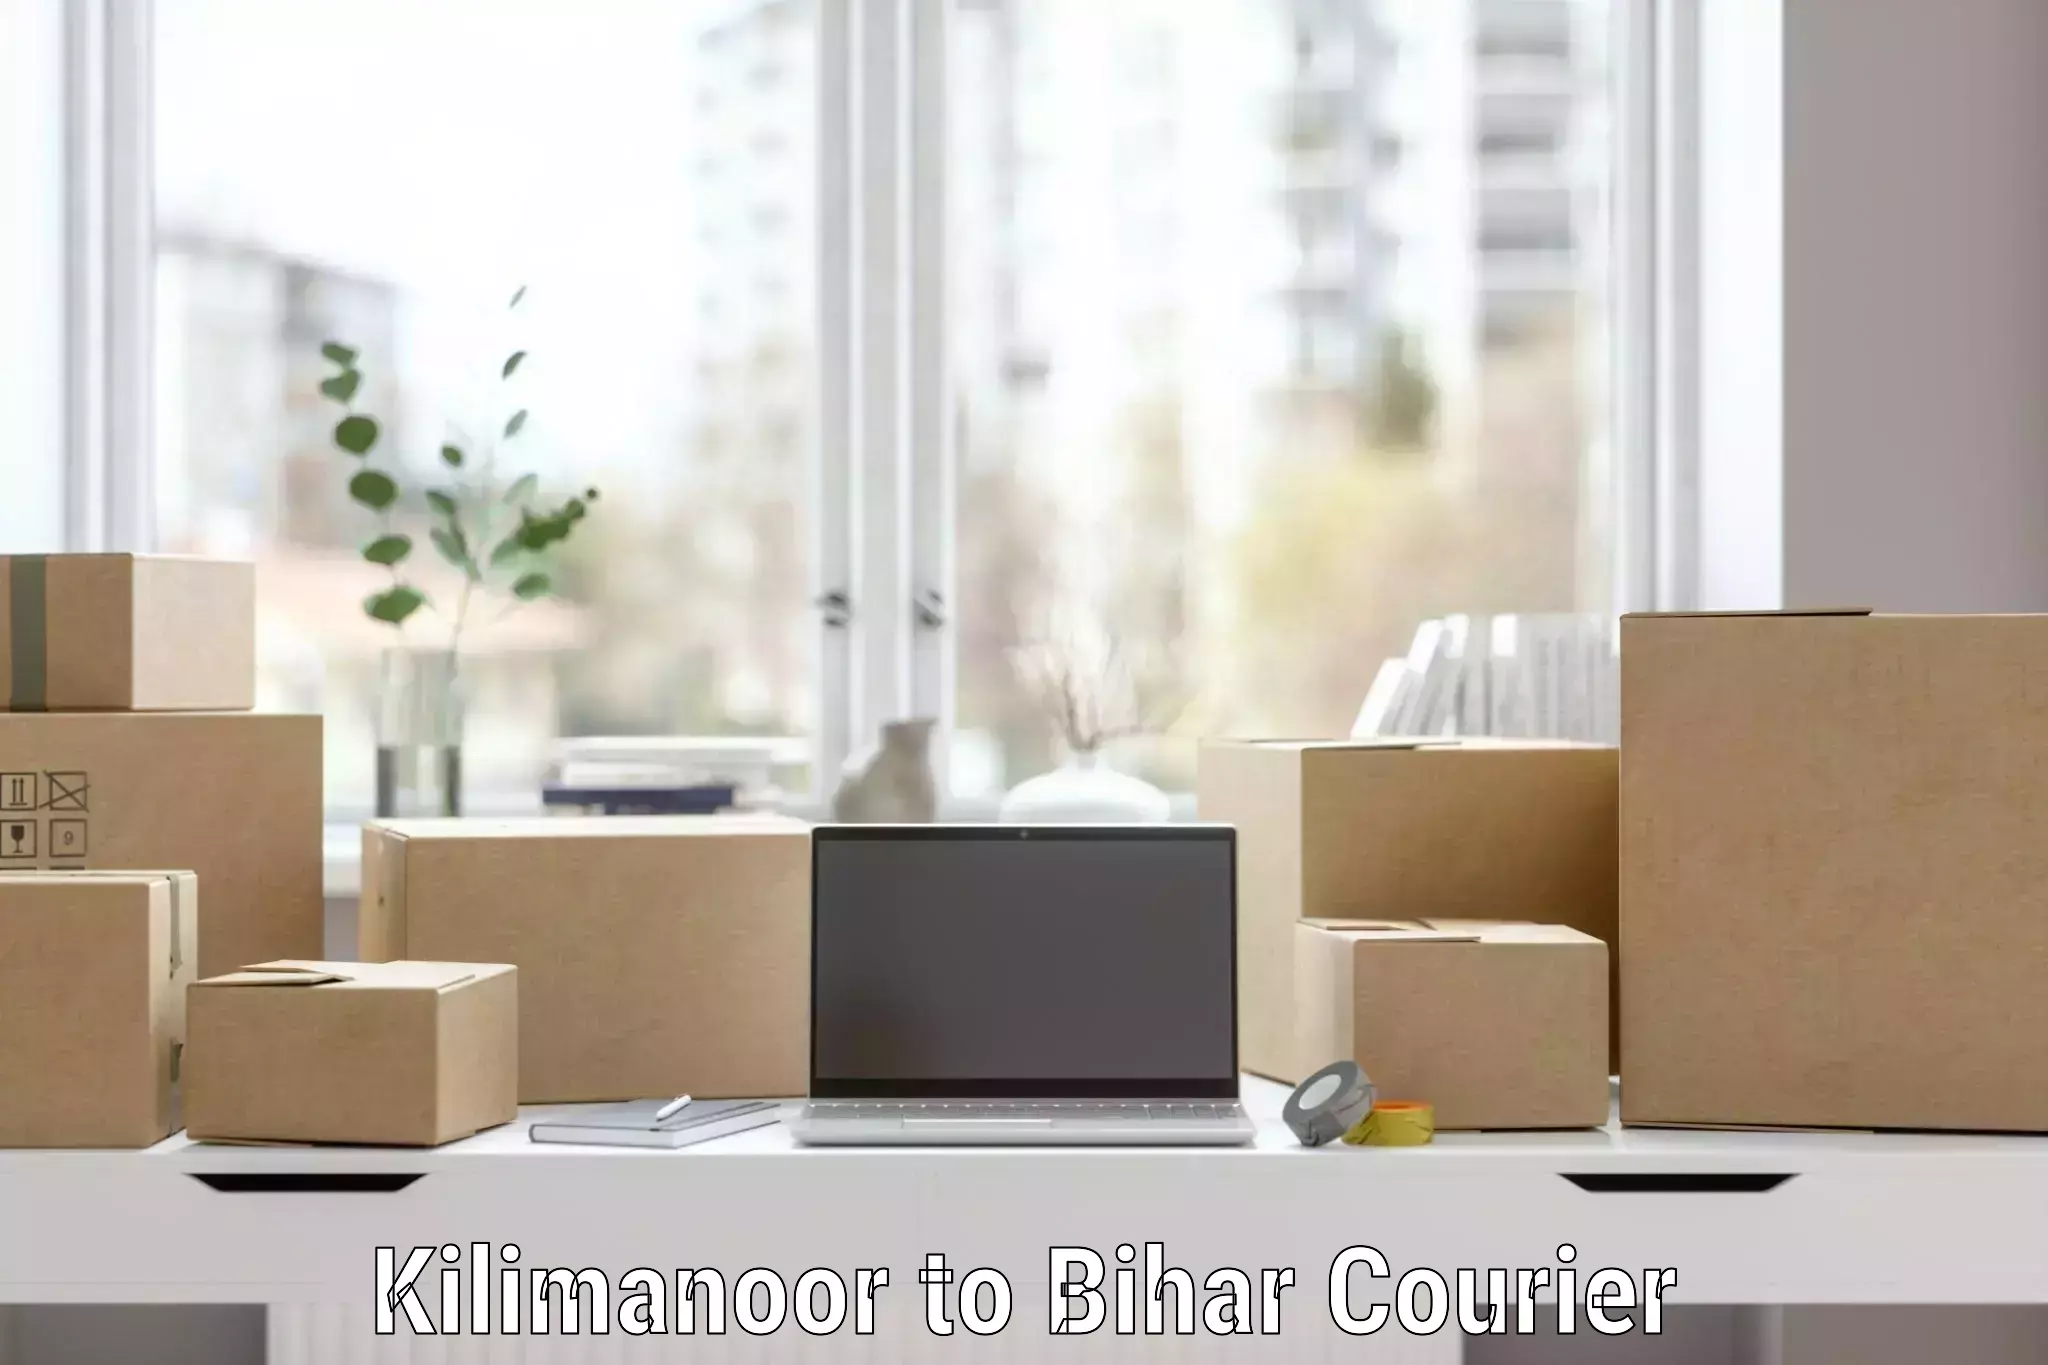 Furniture relocation experts Kilimanoor to Bihar